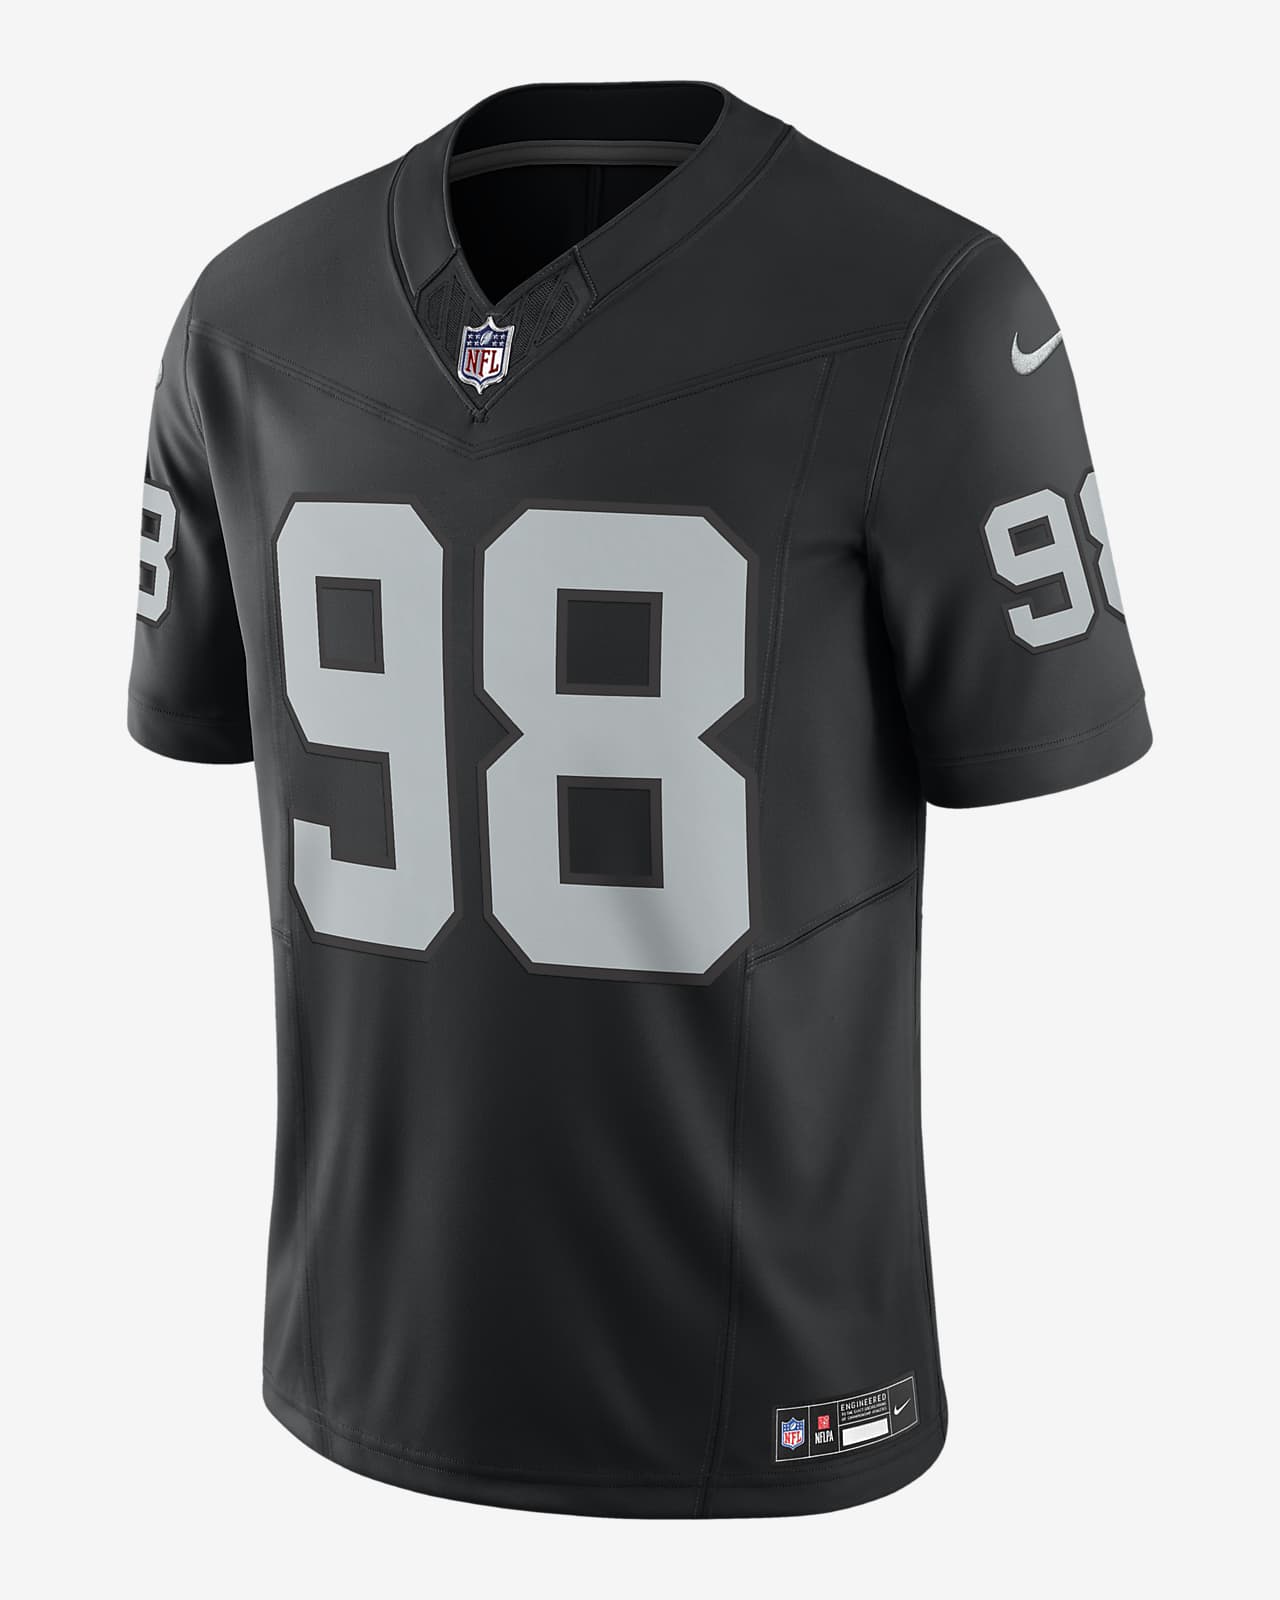 Maxx Crosby Las Vegas Raiders Men's Nike Dri-FIT NFL Limited Football Jersey